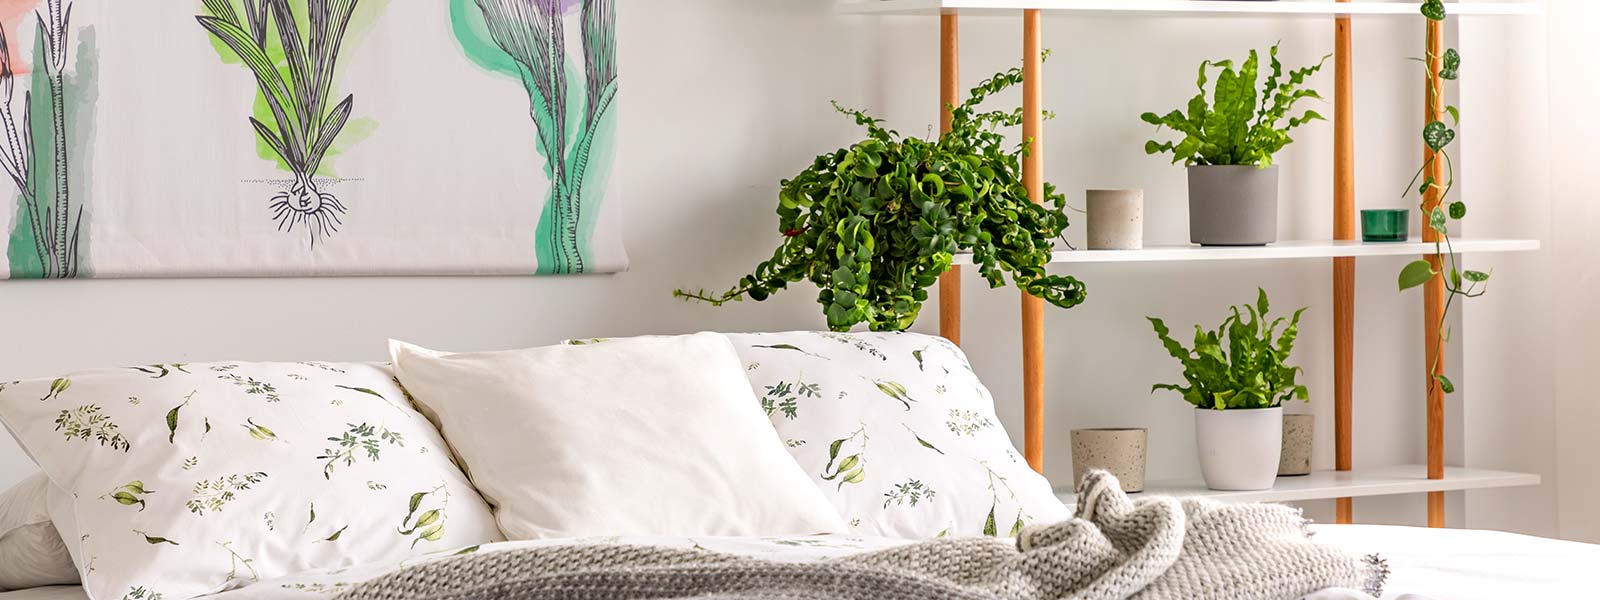 Intérieur de la chambre jungle urbaine avec des plantes en pots à côté d'un lit